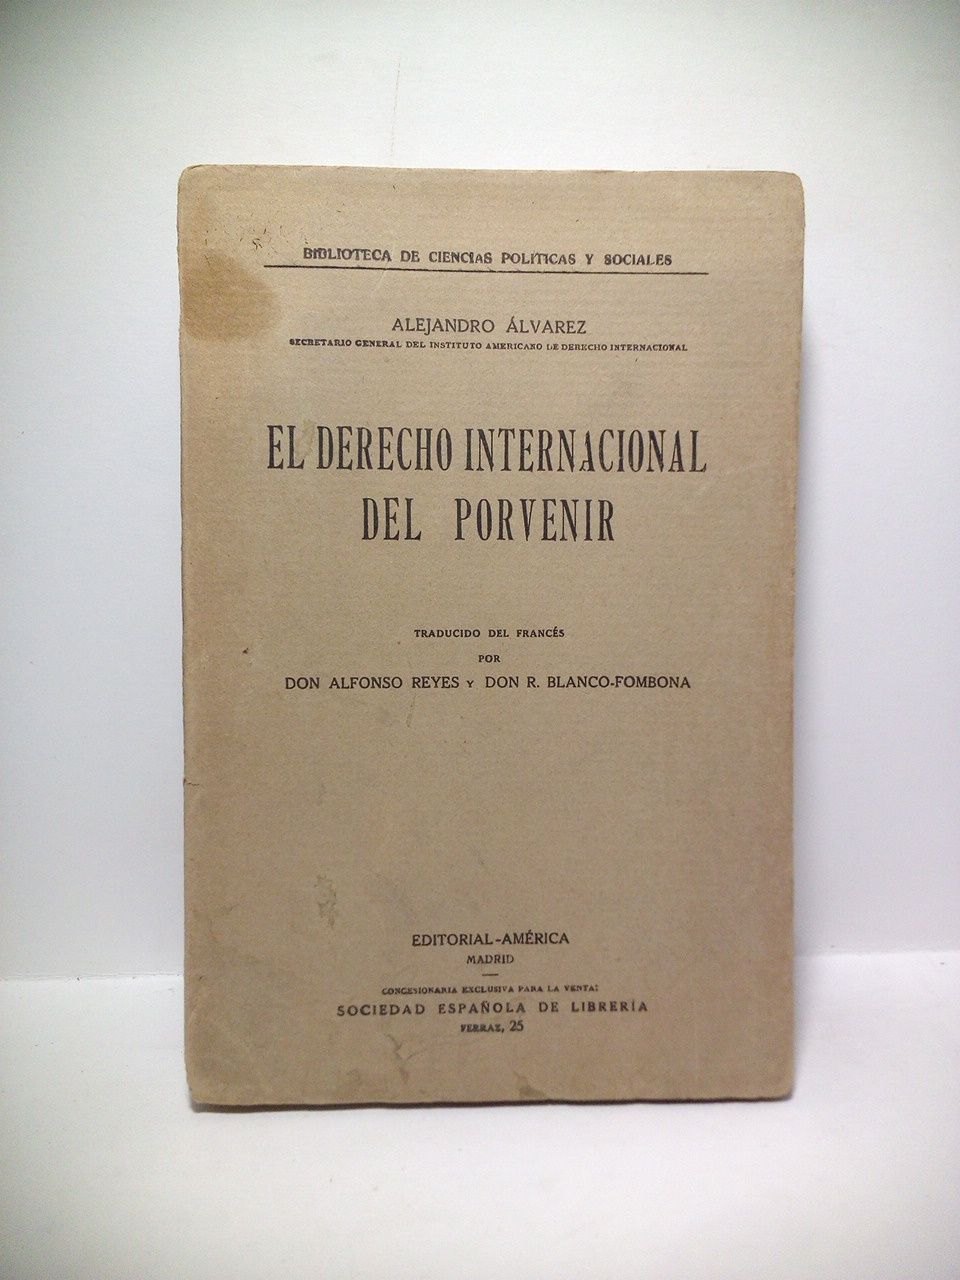 ALVAREZ, Alejandro - El Derecho Internacional del Porvenir /  Traducido del francs por Don Alfonso Reyes y Don R. Blanco-Fombona